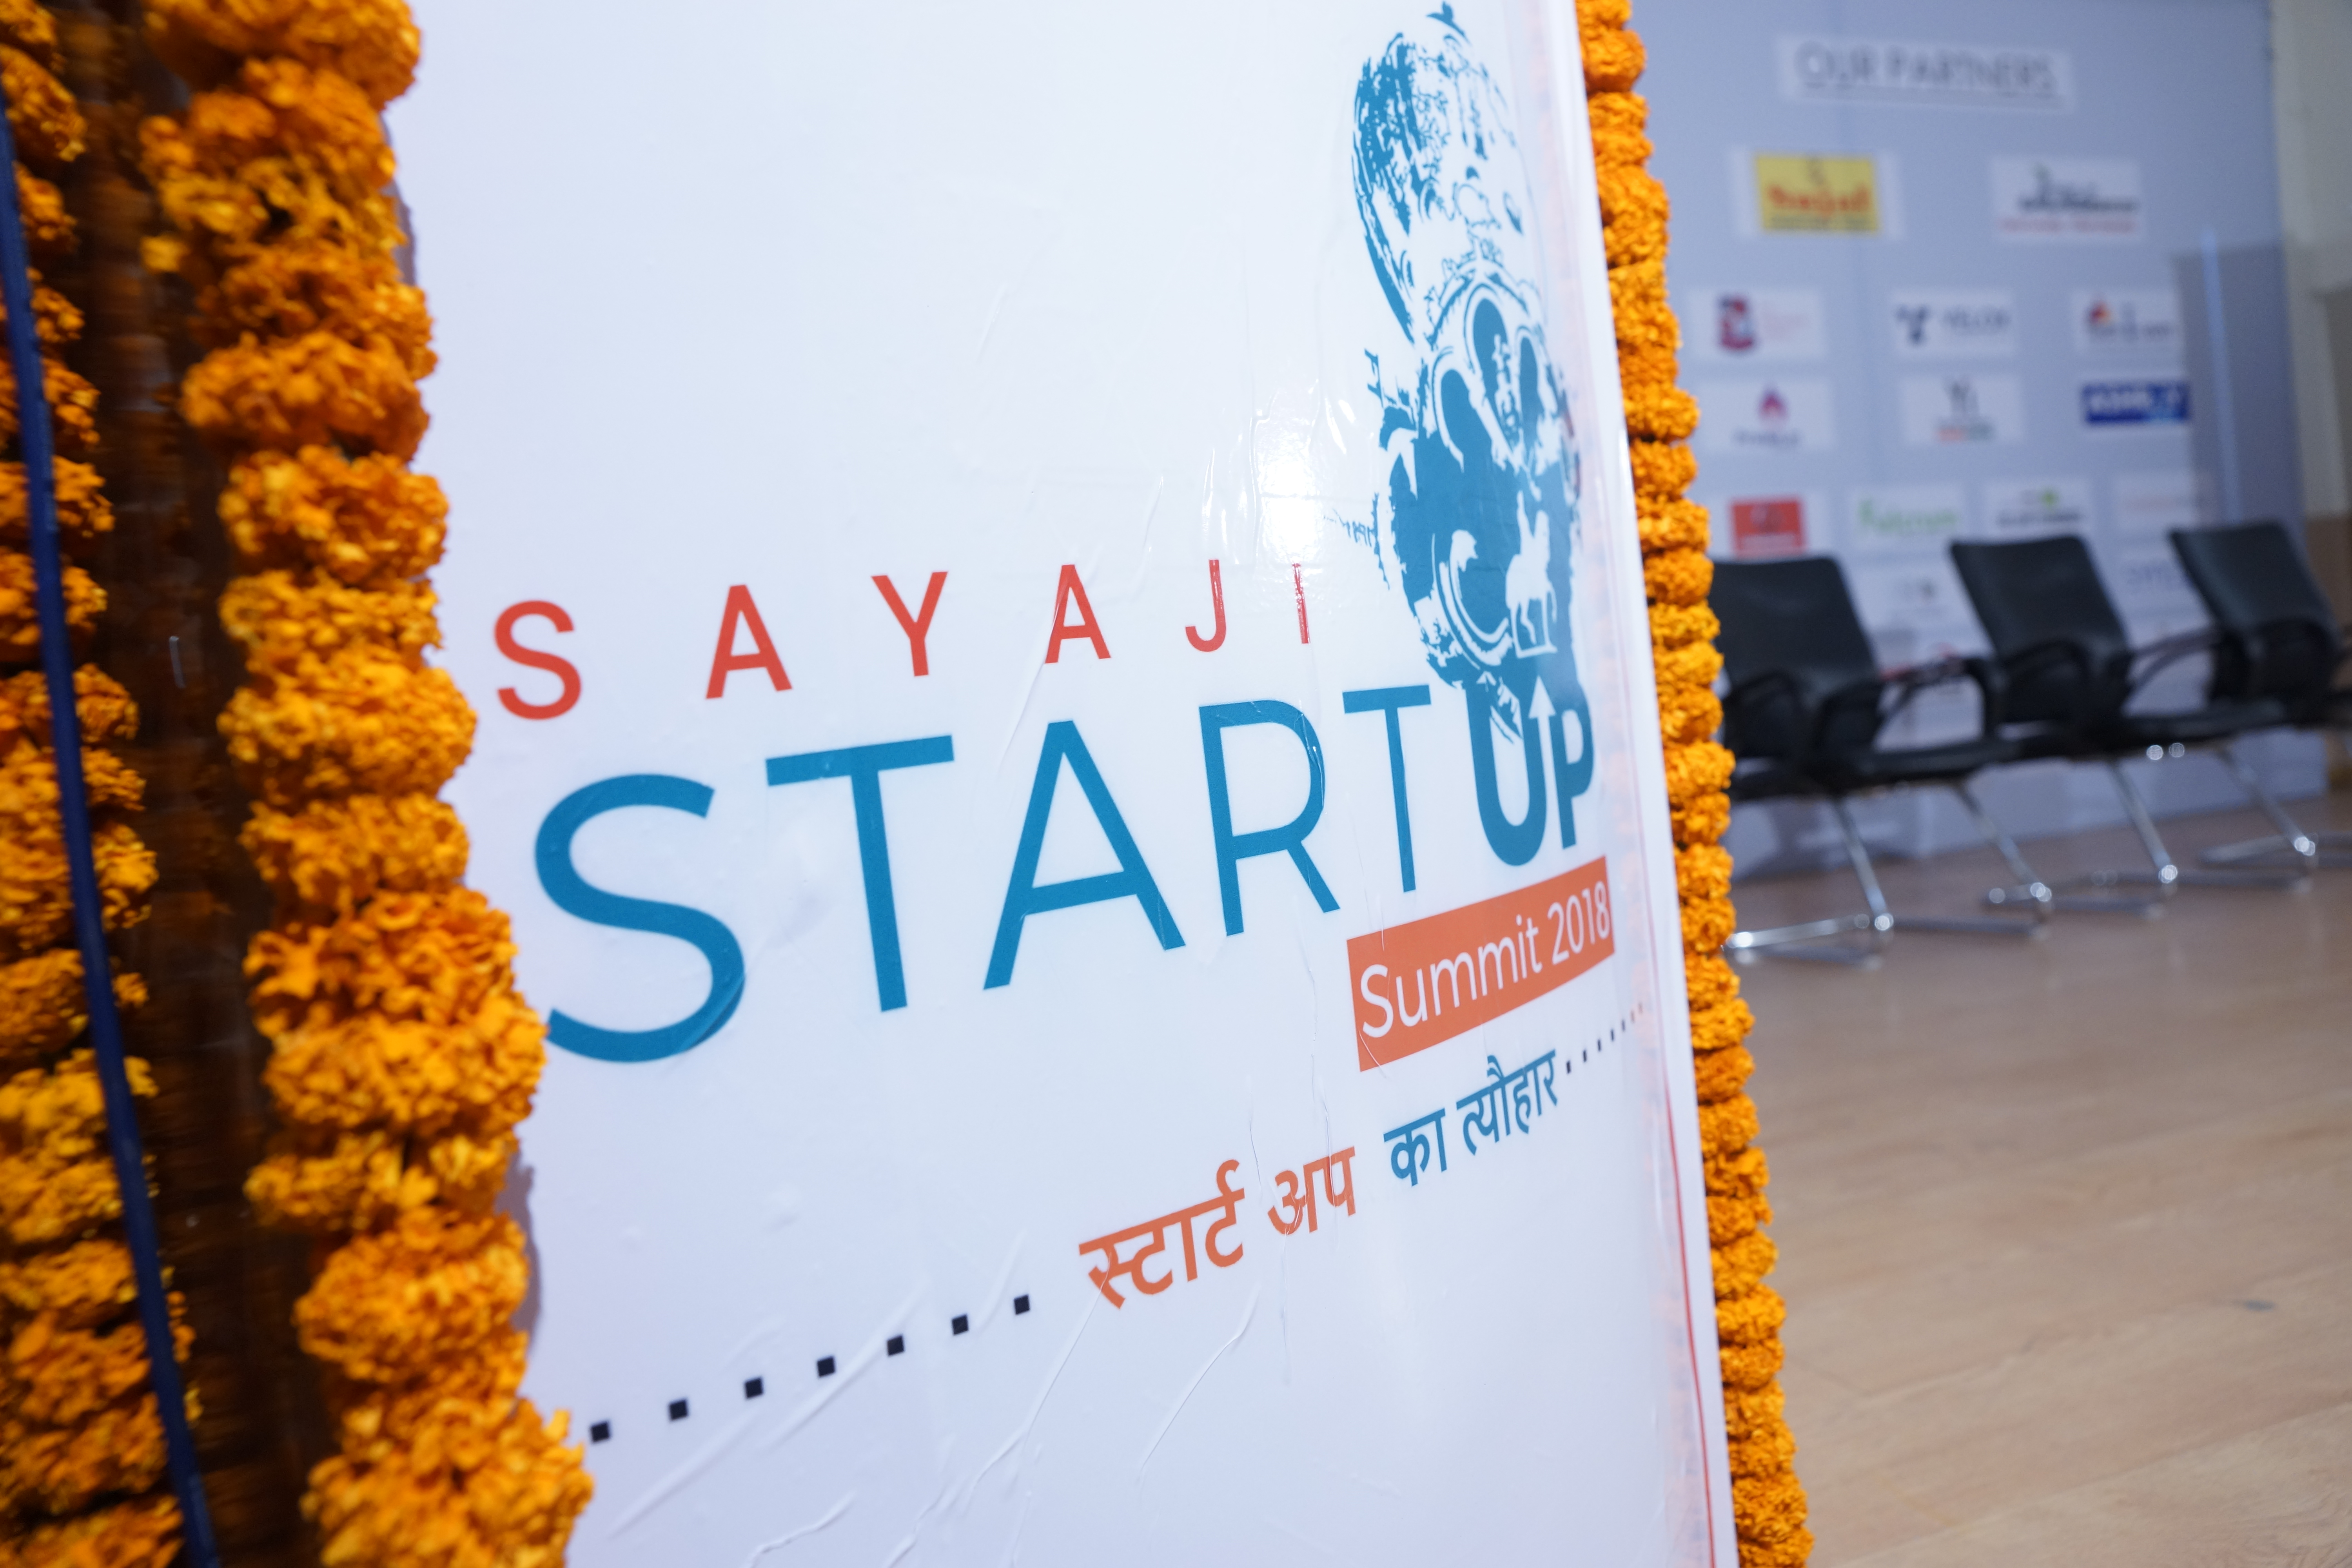 Sayaji Startup Summit 2018 started